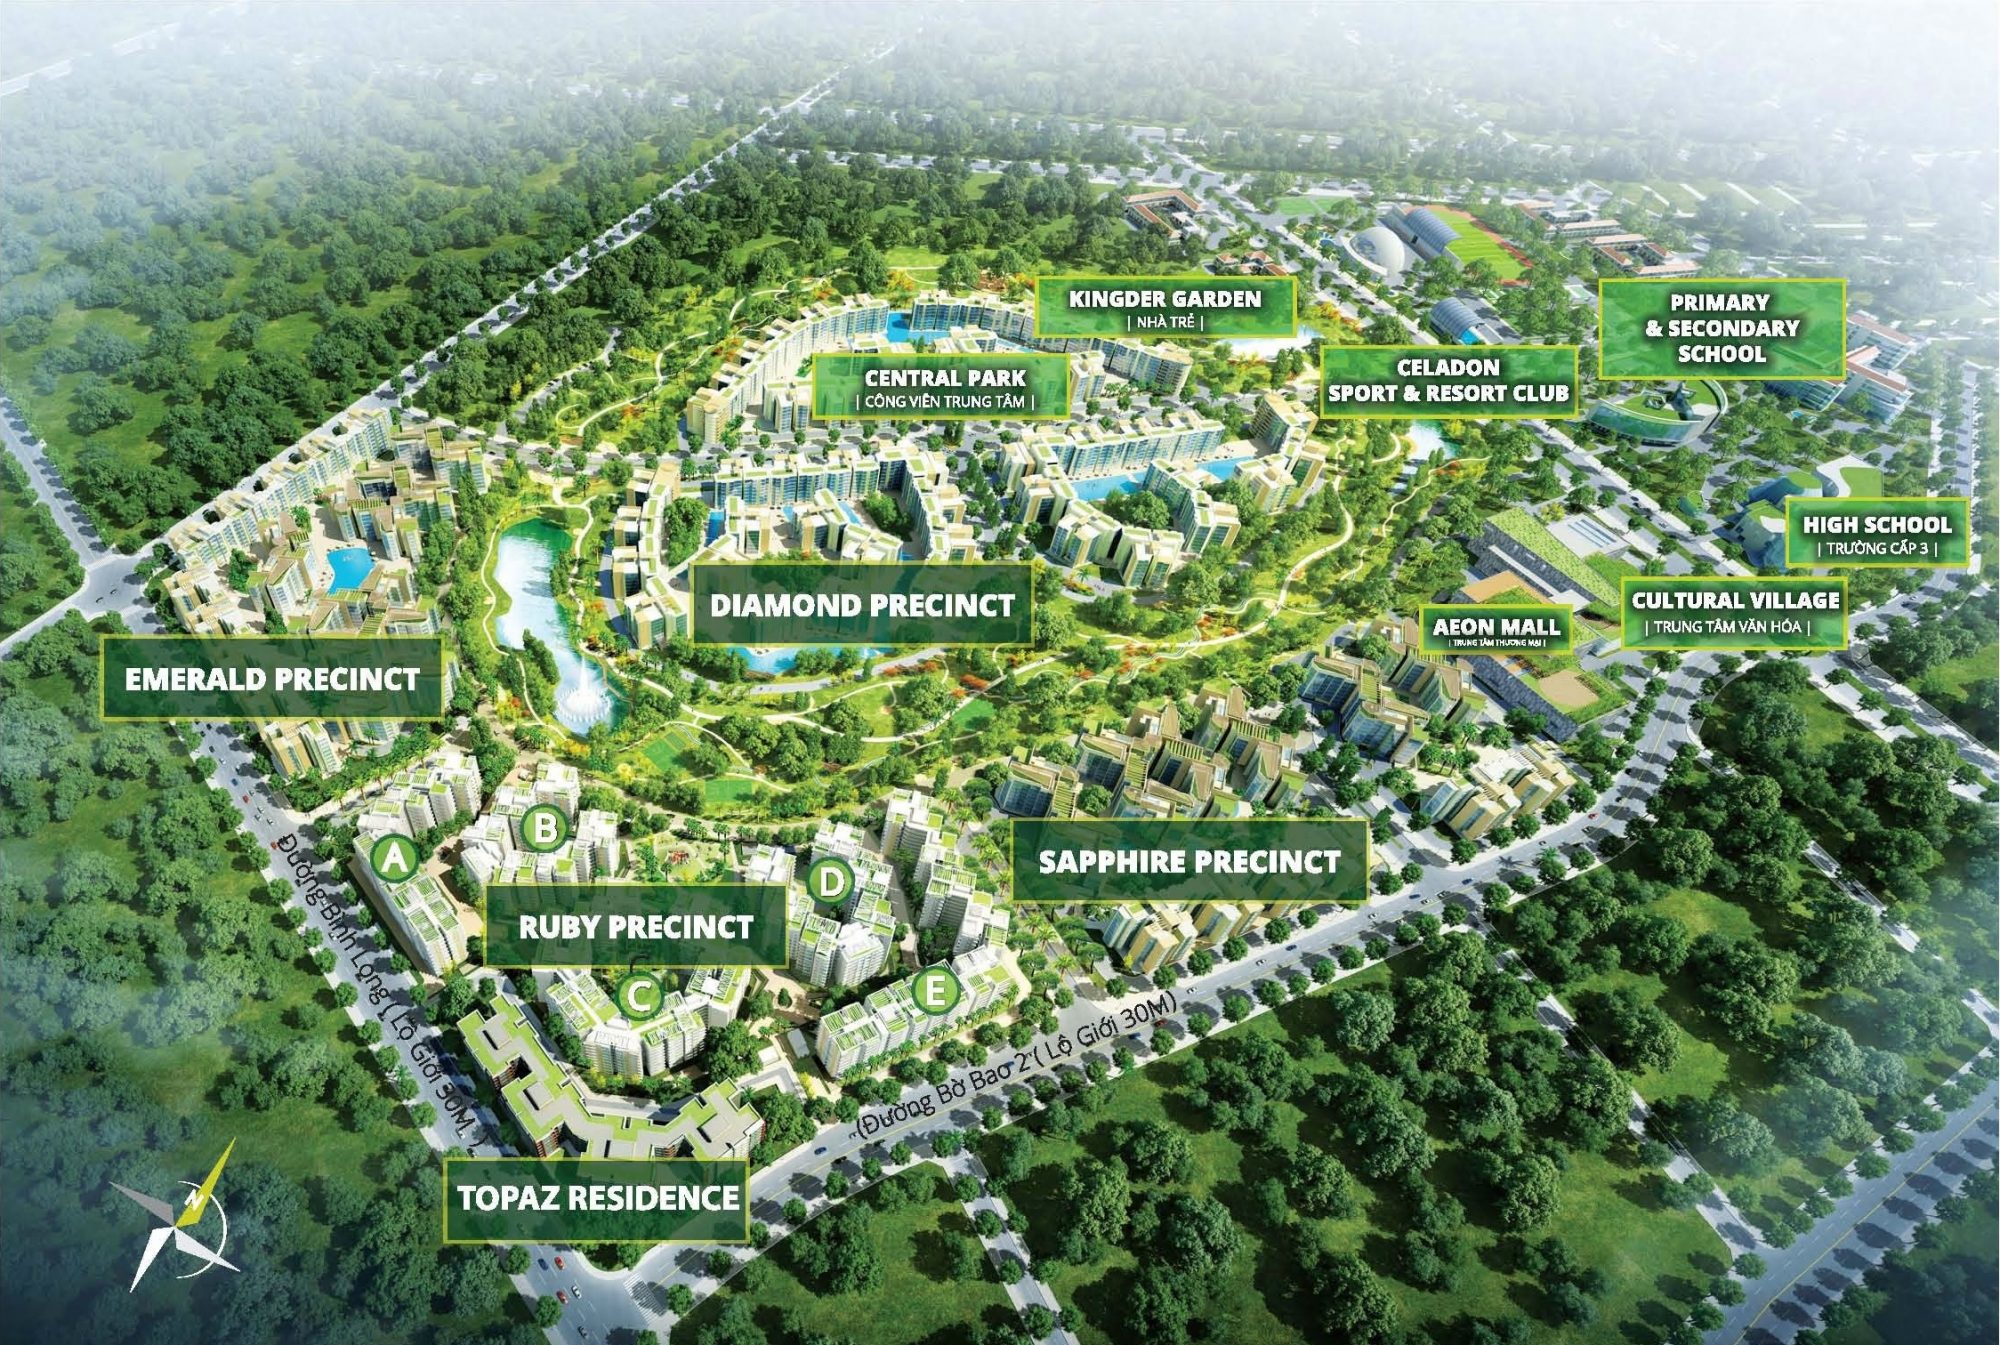 Căn hộ Emerald Precinct nằm trong khu đô thị Celadon City tọa lạc số 88 đường N1, P.Sơn Kỳ, Q.Tân Phú, TP.HCM